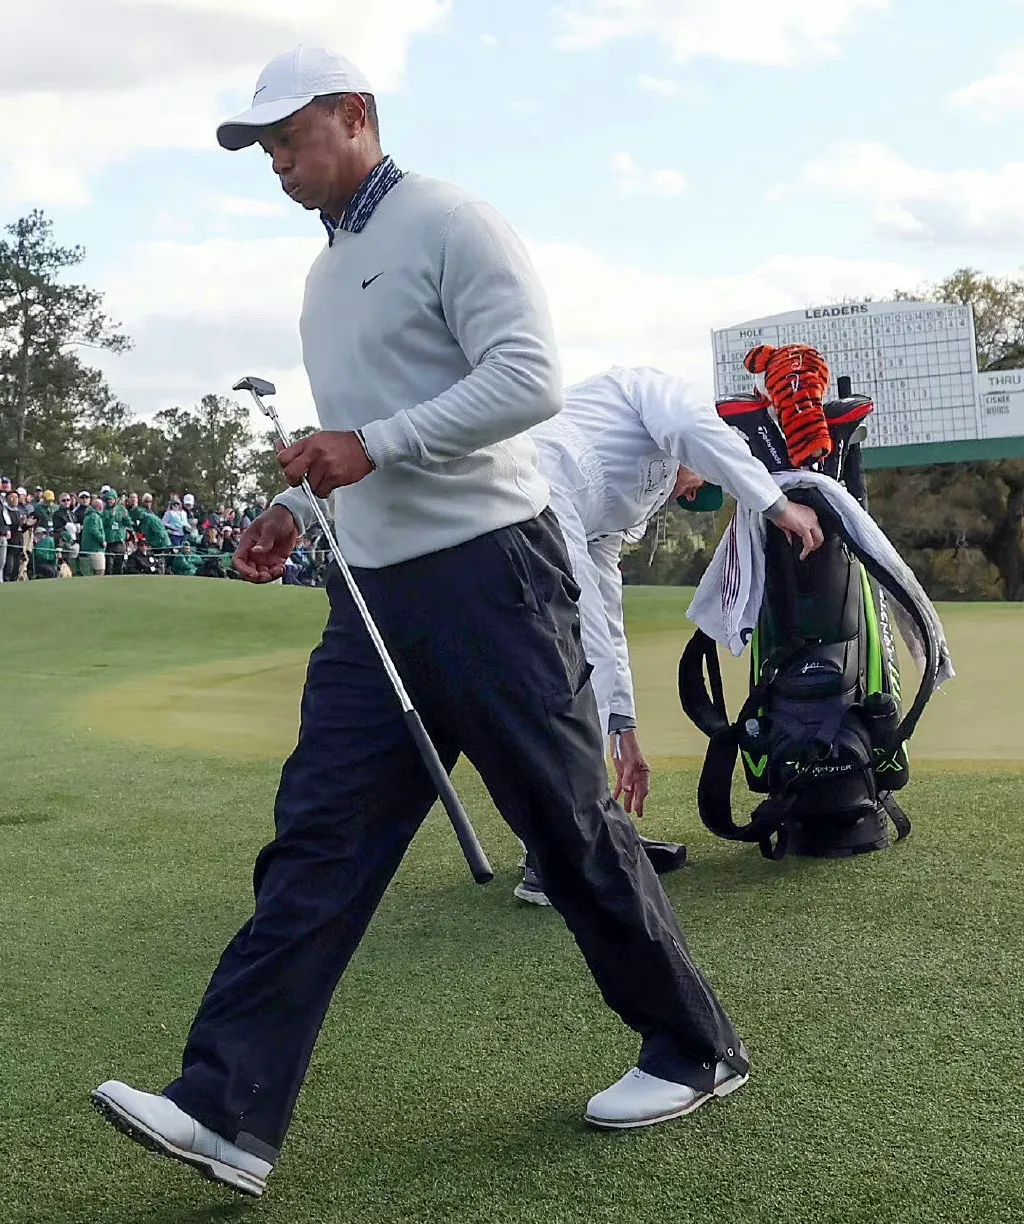 Världen jublar för de tuffa – Tiger Woods återvänder efter 508 dagar5